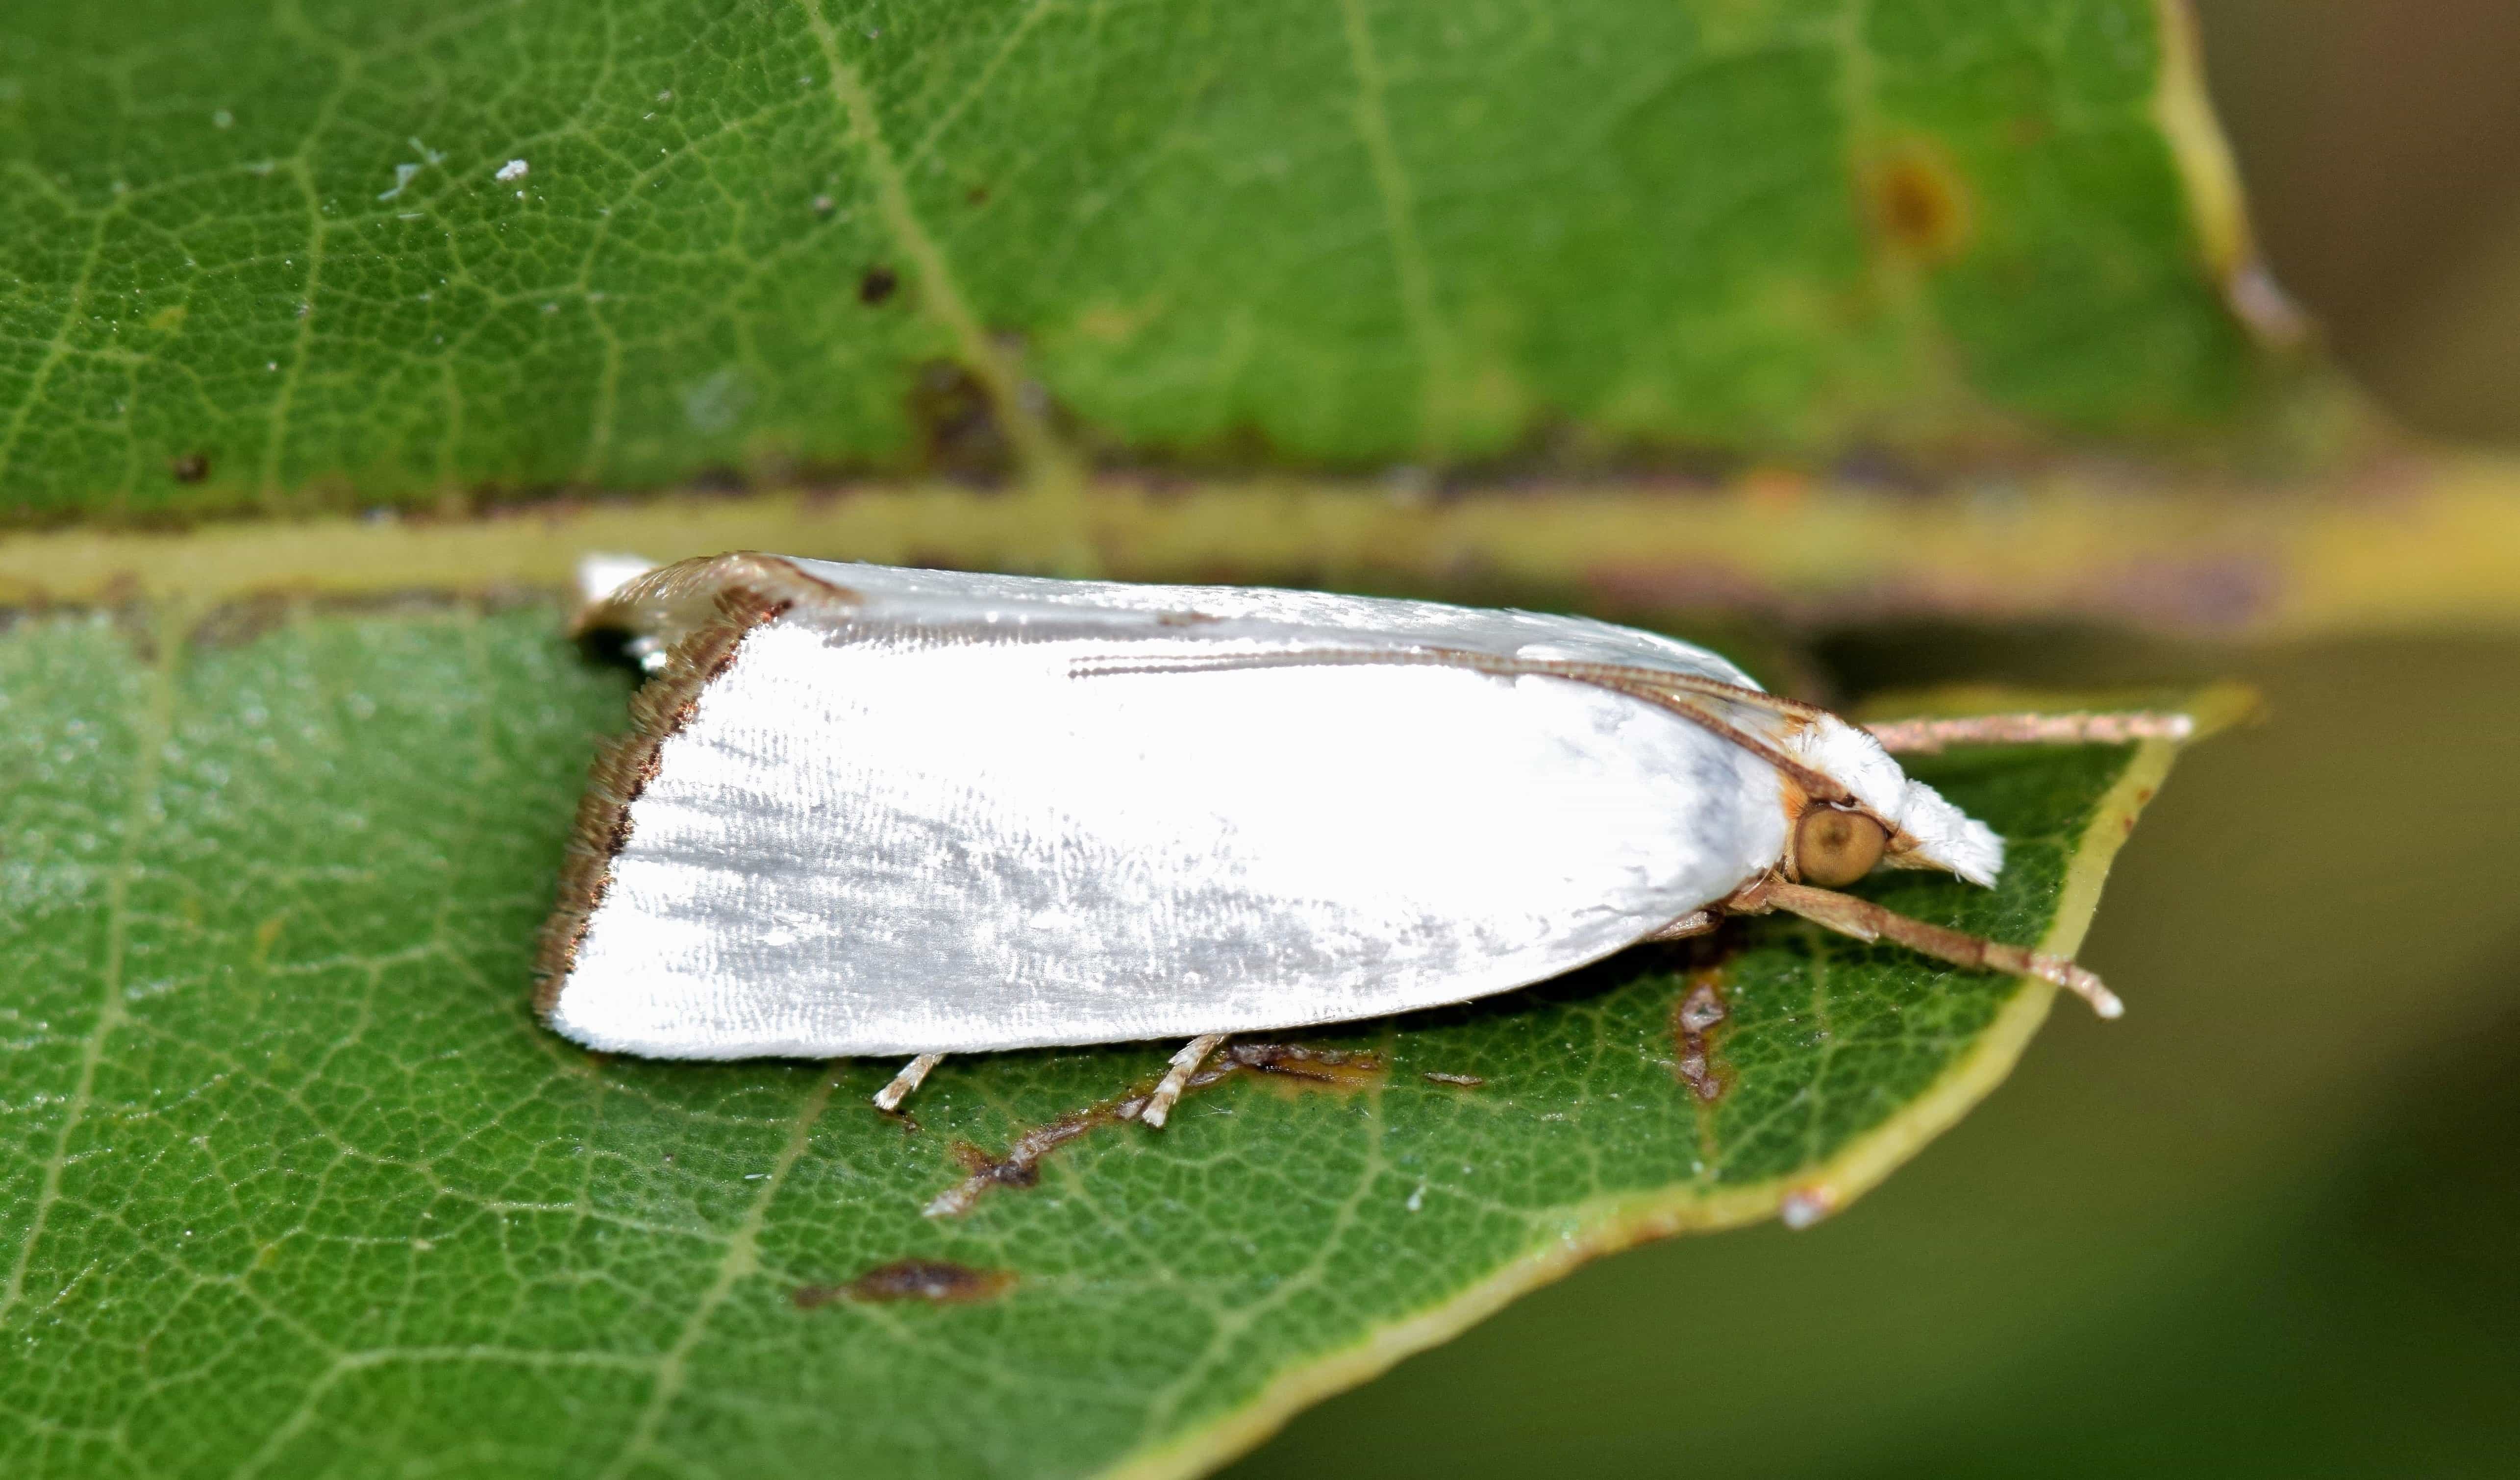 飞蛾品种图鉴 白色图片